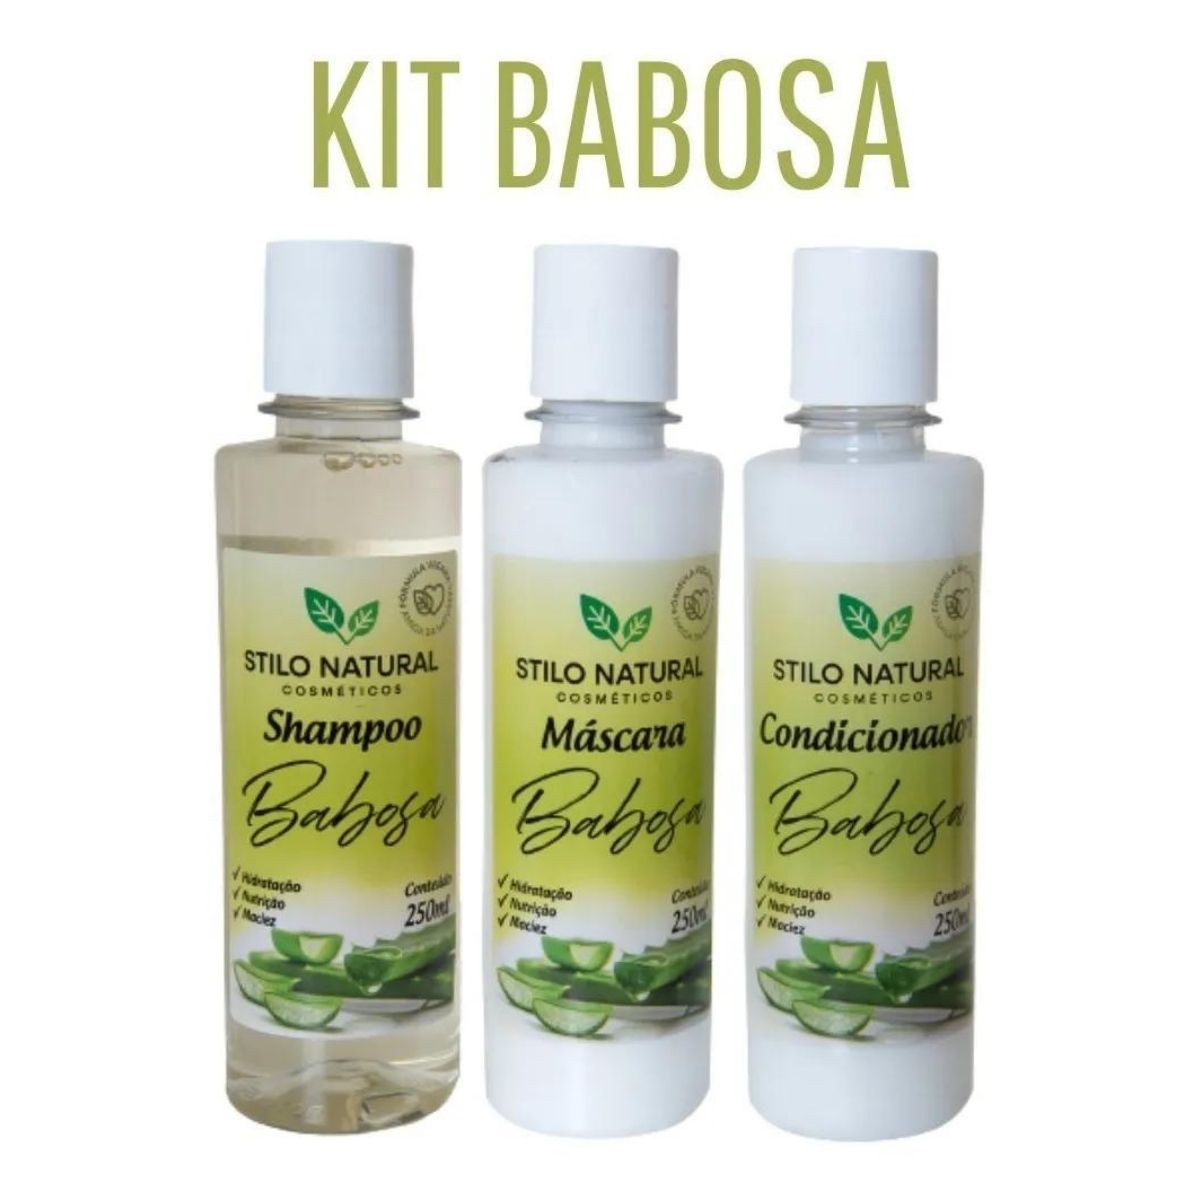 KIT de Babosa - Shampoo / Condicionador / Máscara Capilar - 250g